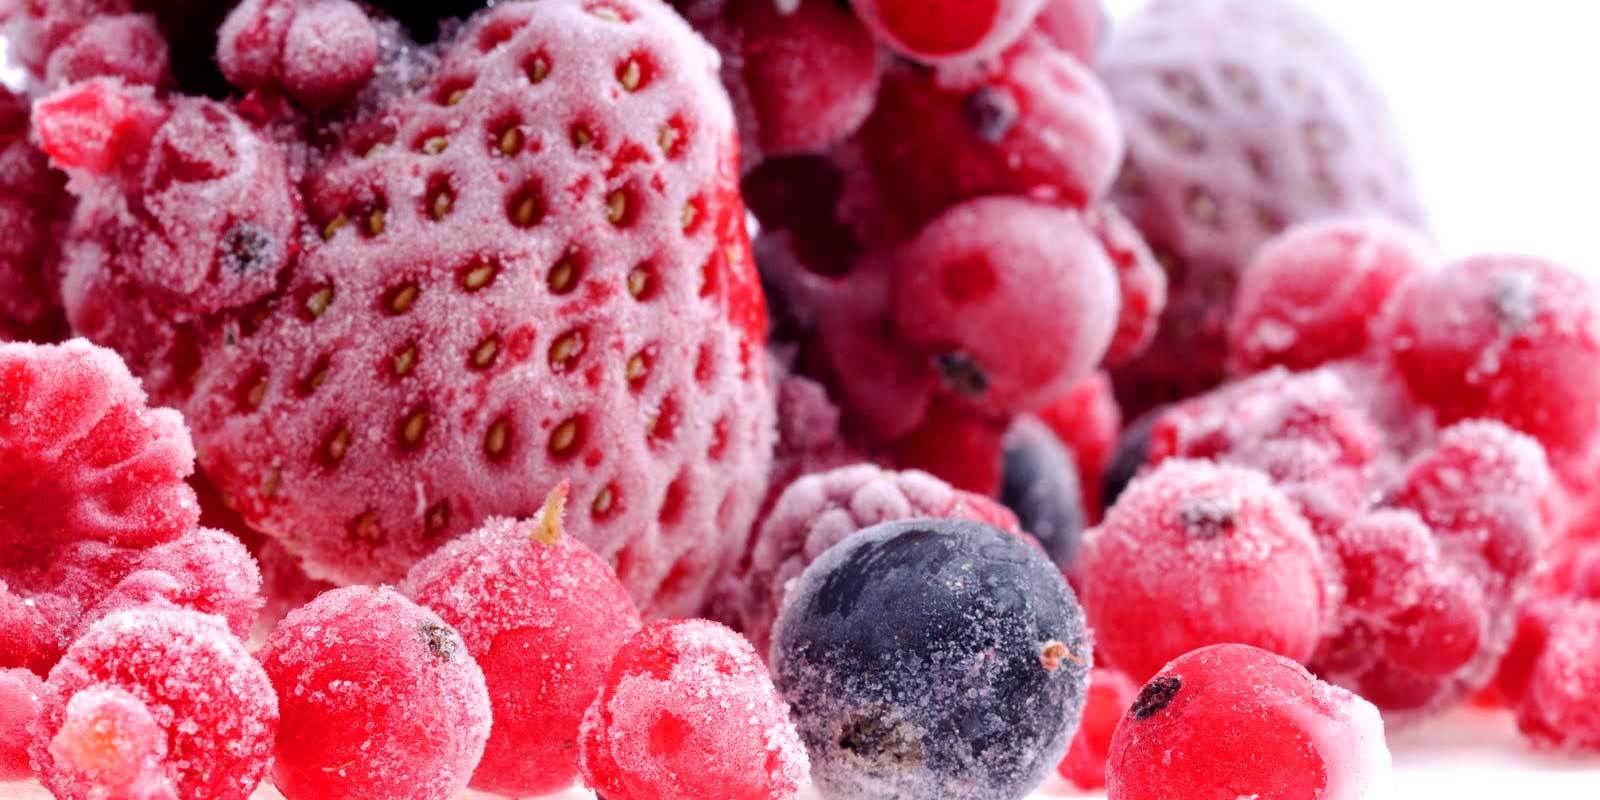 Bevroren groenten en fruit Of het nu gaat om huisgemaakt ijs, uw eigen jamcreaties of een heerlijke taart met diepvriesfruit, u heeft de juiste hoeveelheden op voorraad. Er is geen magie voor nodig om bevroren fruit spontaan te verwerken.